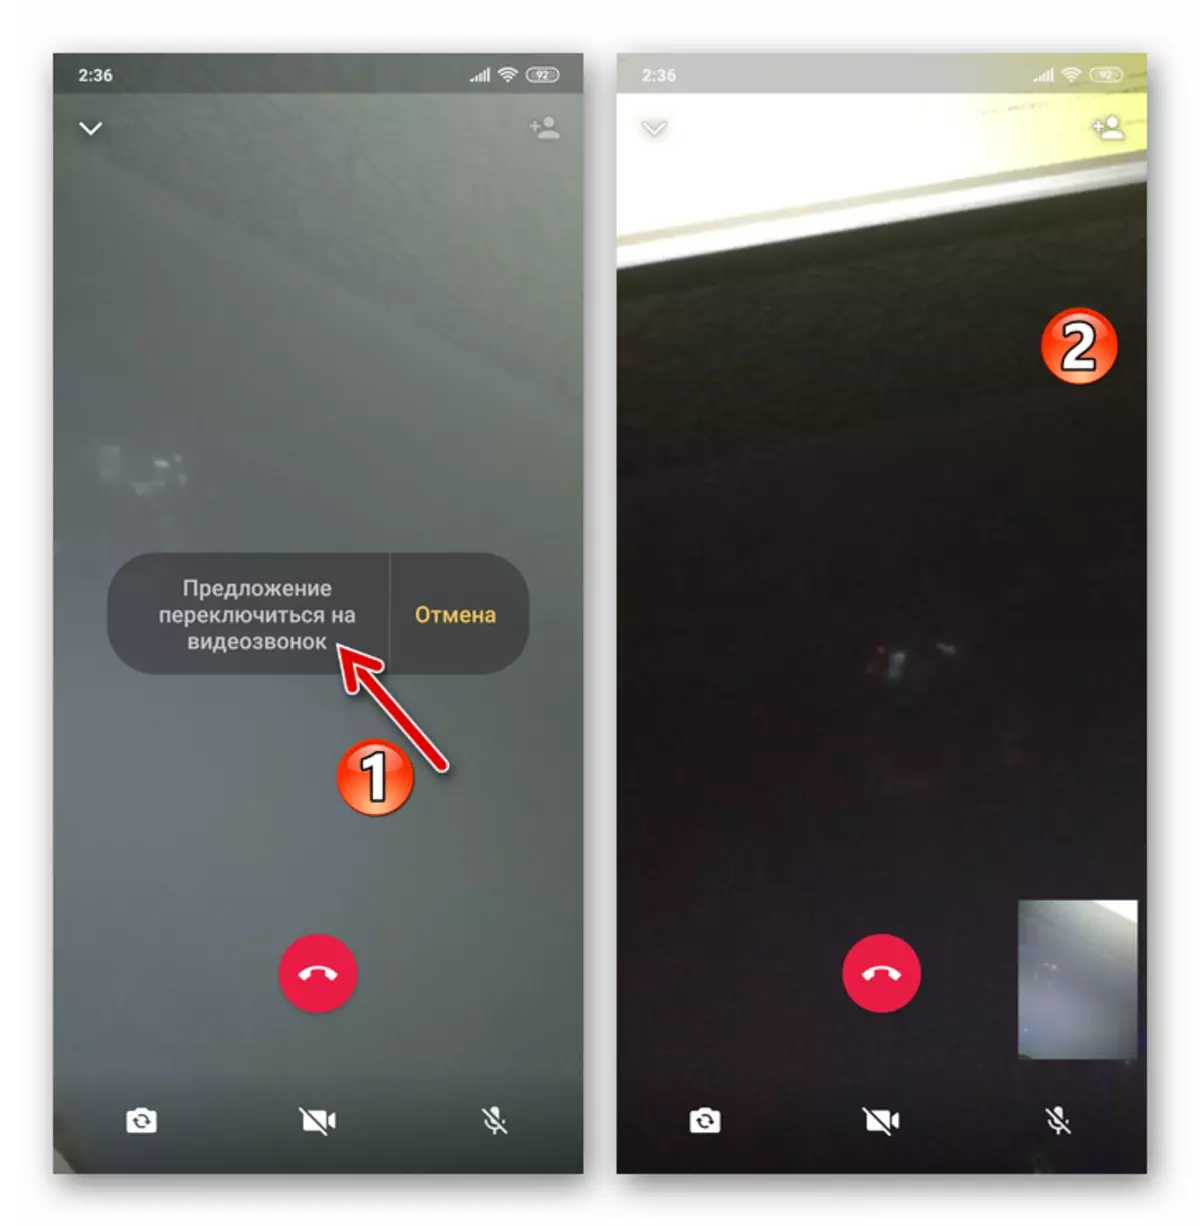 Whatsapp untuk android beralih ke tautan video dalam proses audiosit